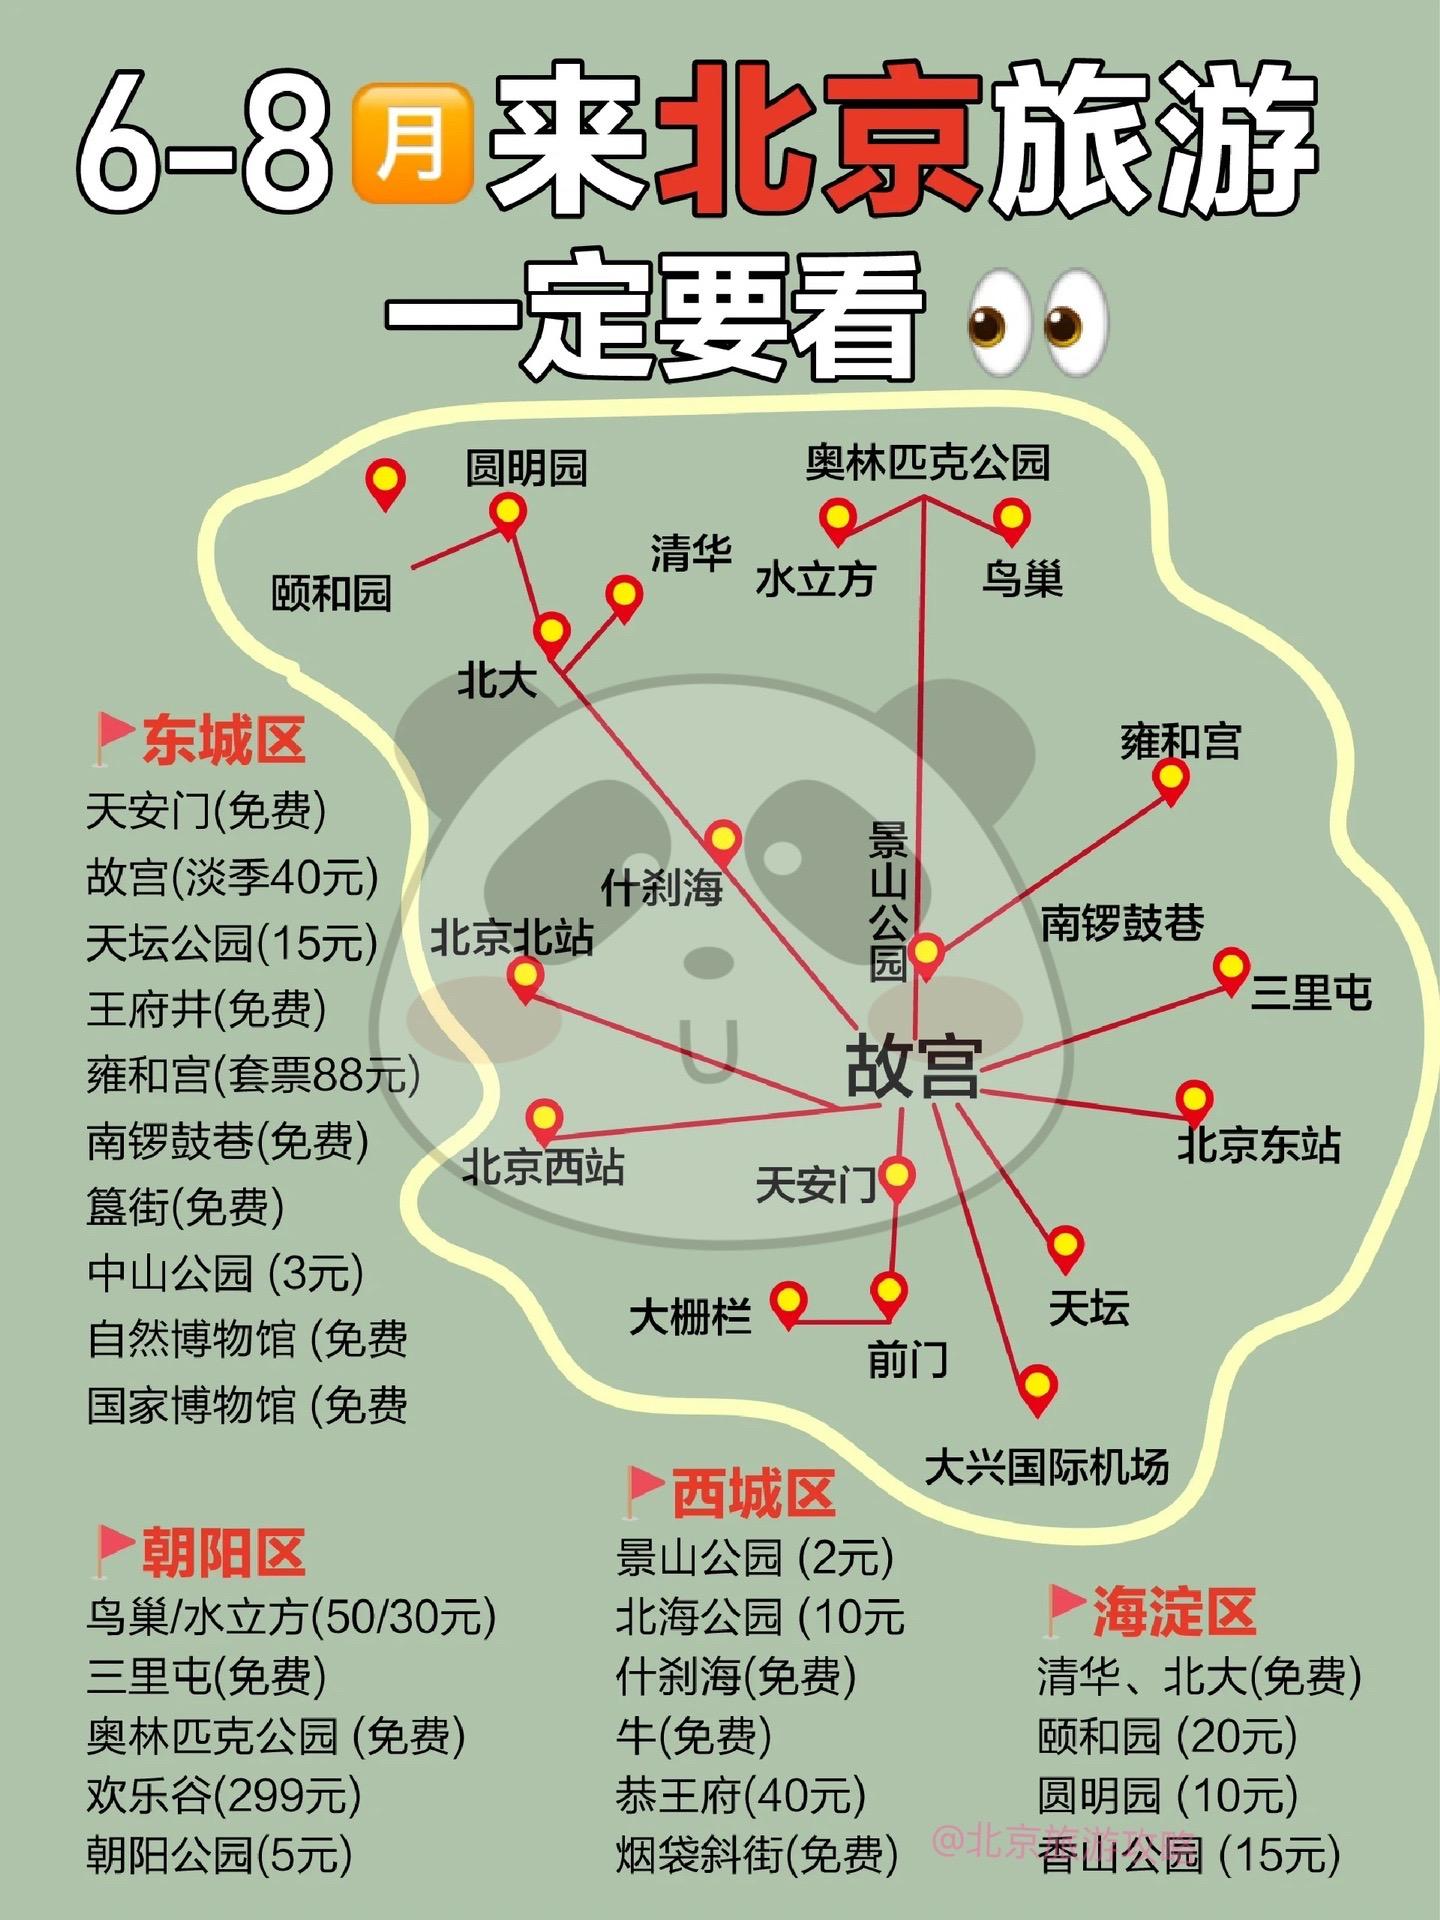 北京旅游|6-8月来北京旅游  一定要看 ?